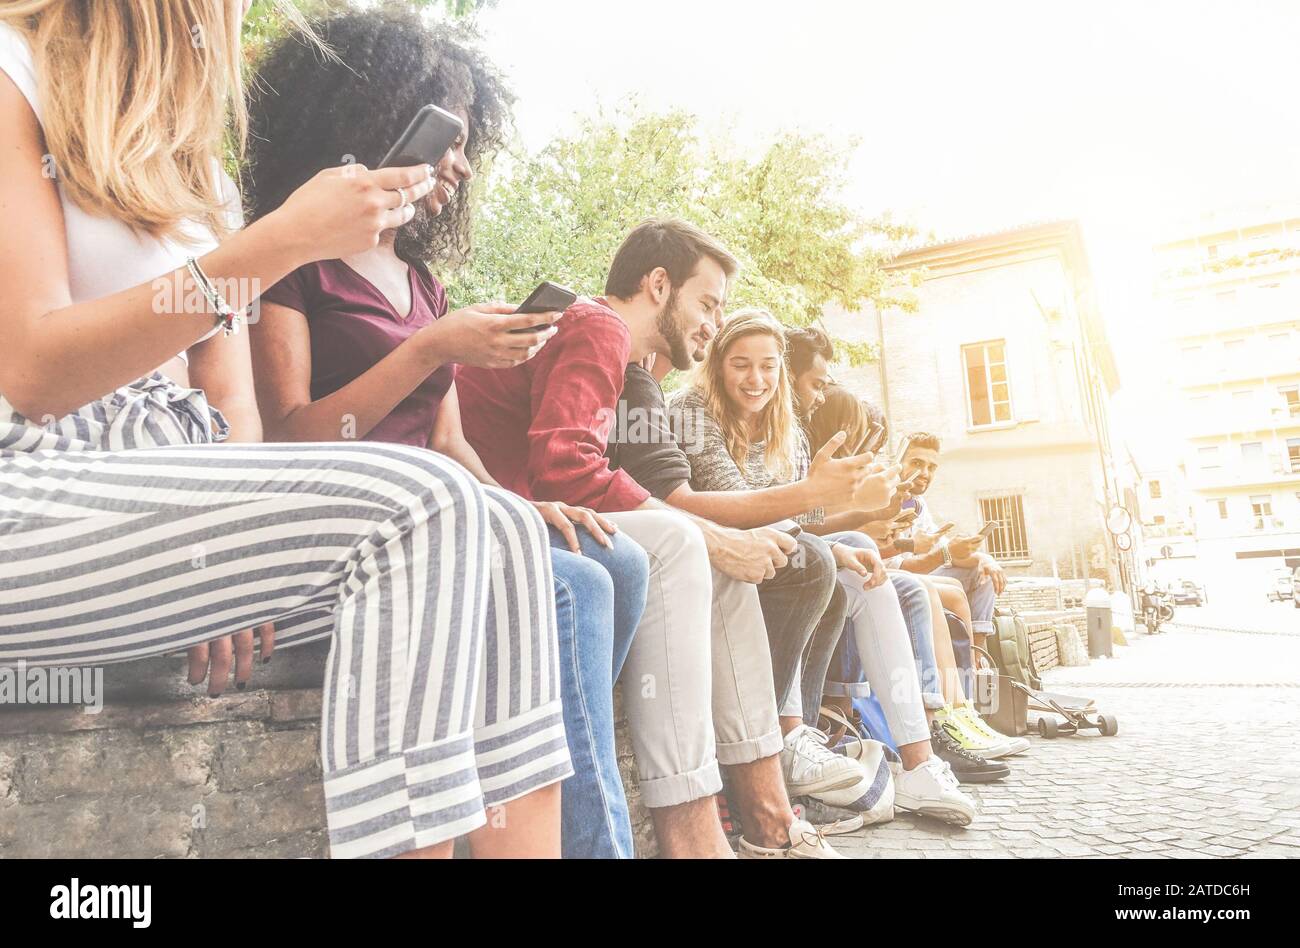 Diverse Kulturfreunde nutzen Smartphones im Freien - Gruppe glücklicher Menschen, die mit Technologietrends Spaß haben - Jugend, sucht der neuen Generation und Frie Stockfoto